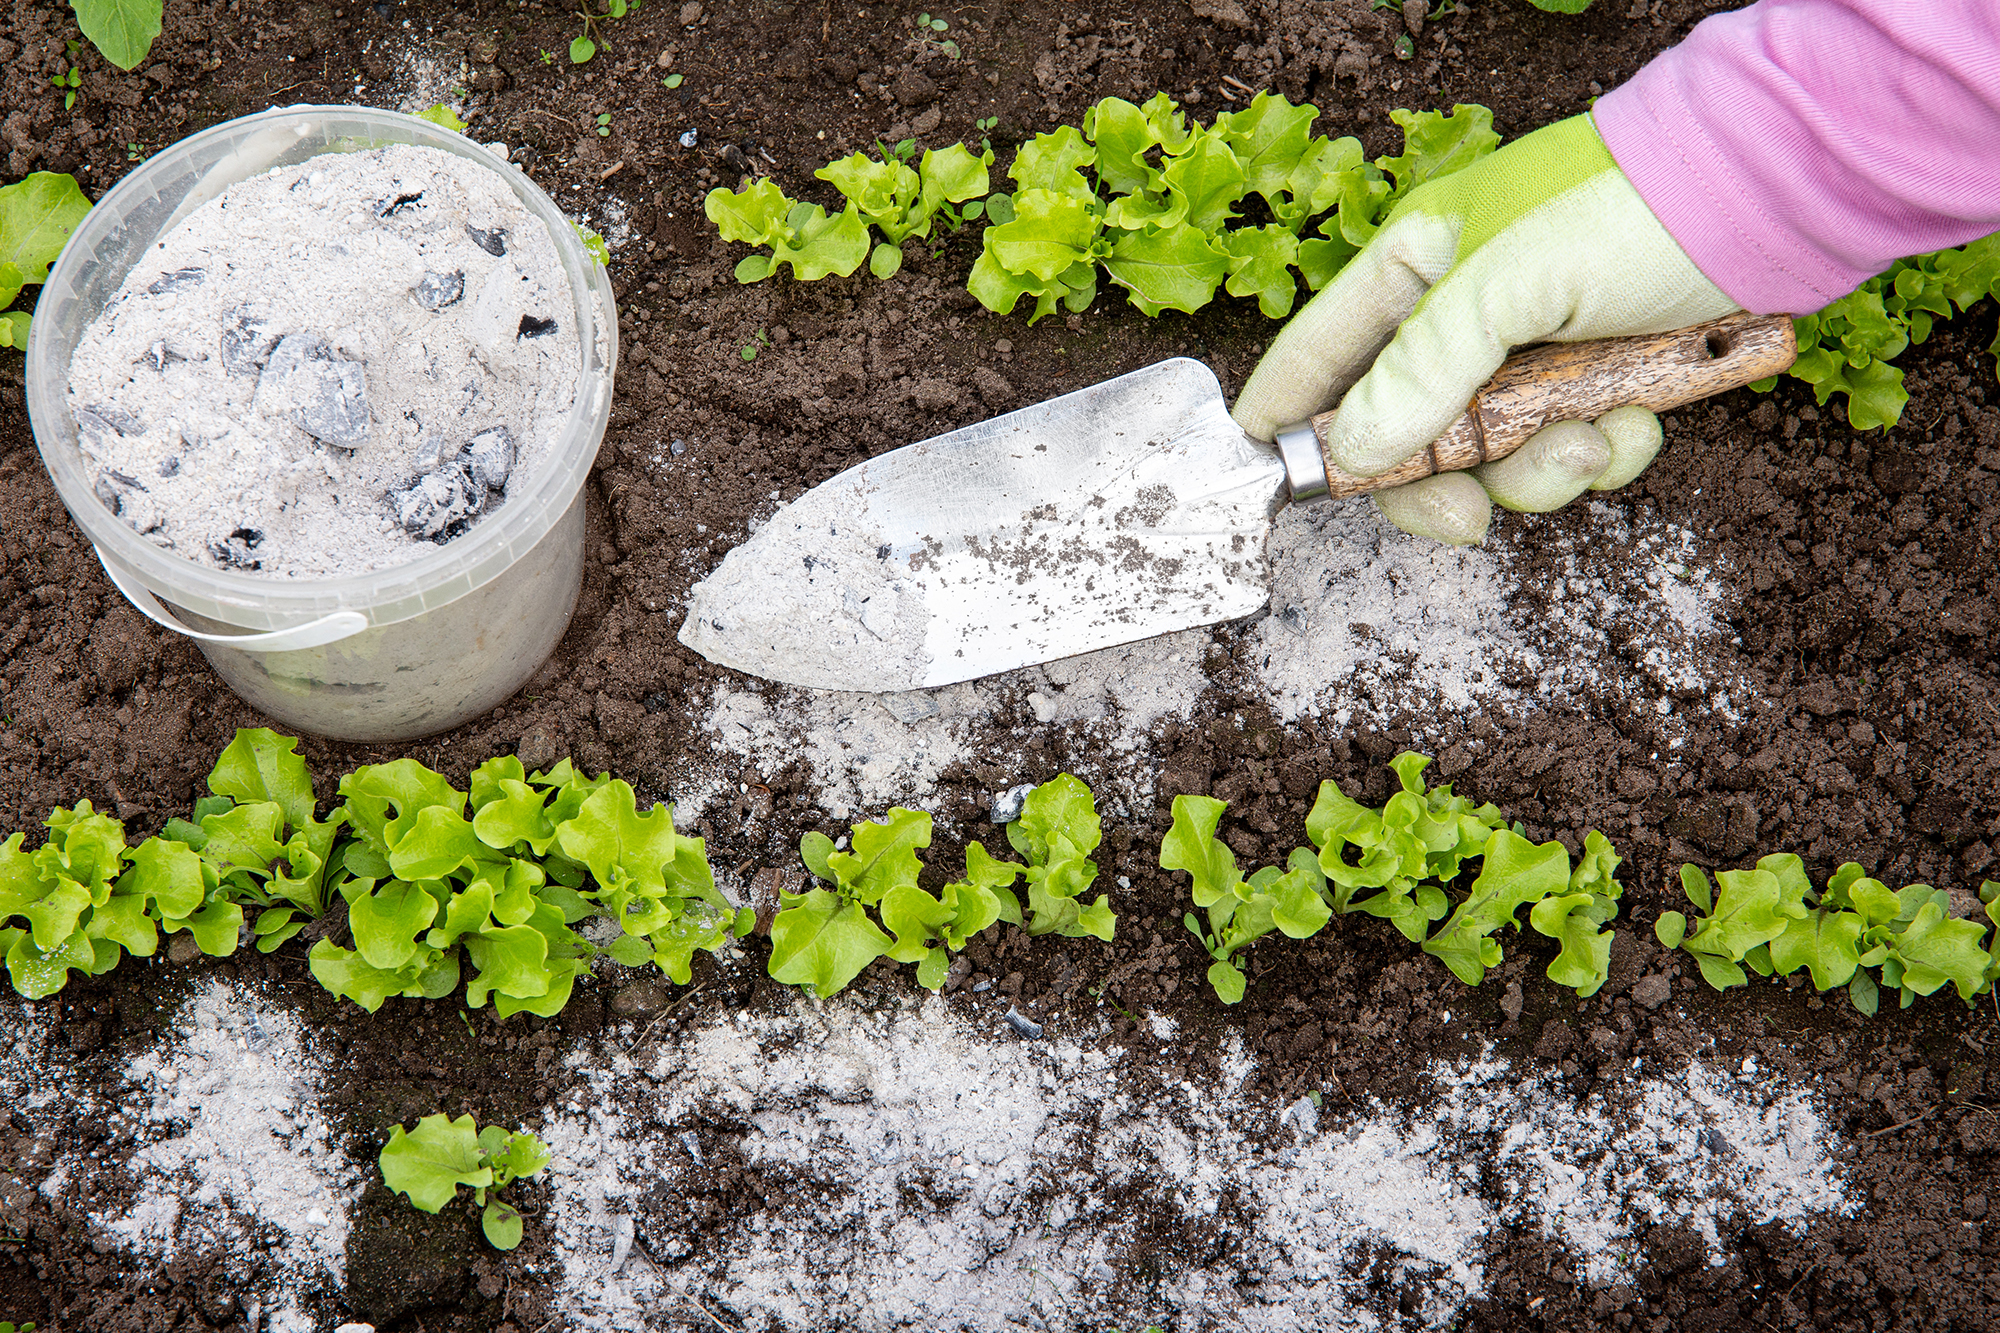 Gardener’s gloved hand sprinkling wood burn ash from small garden shovel between lettuce herbs.